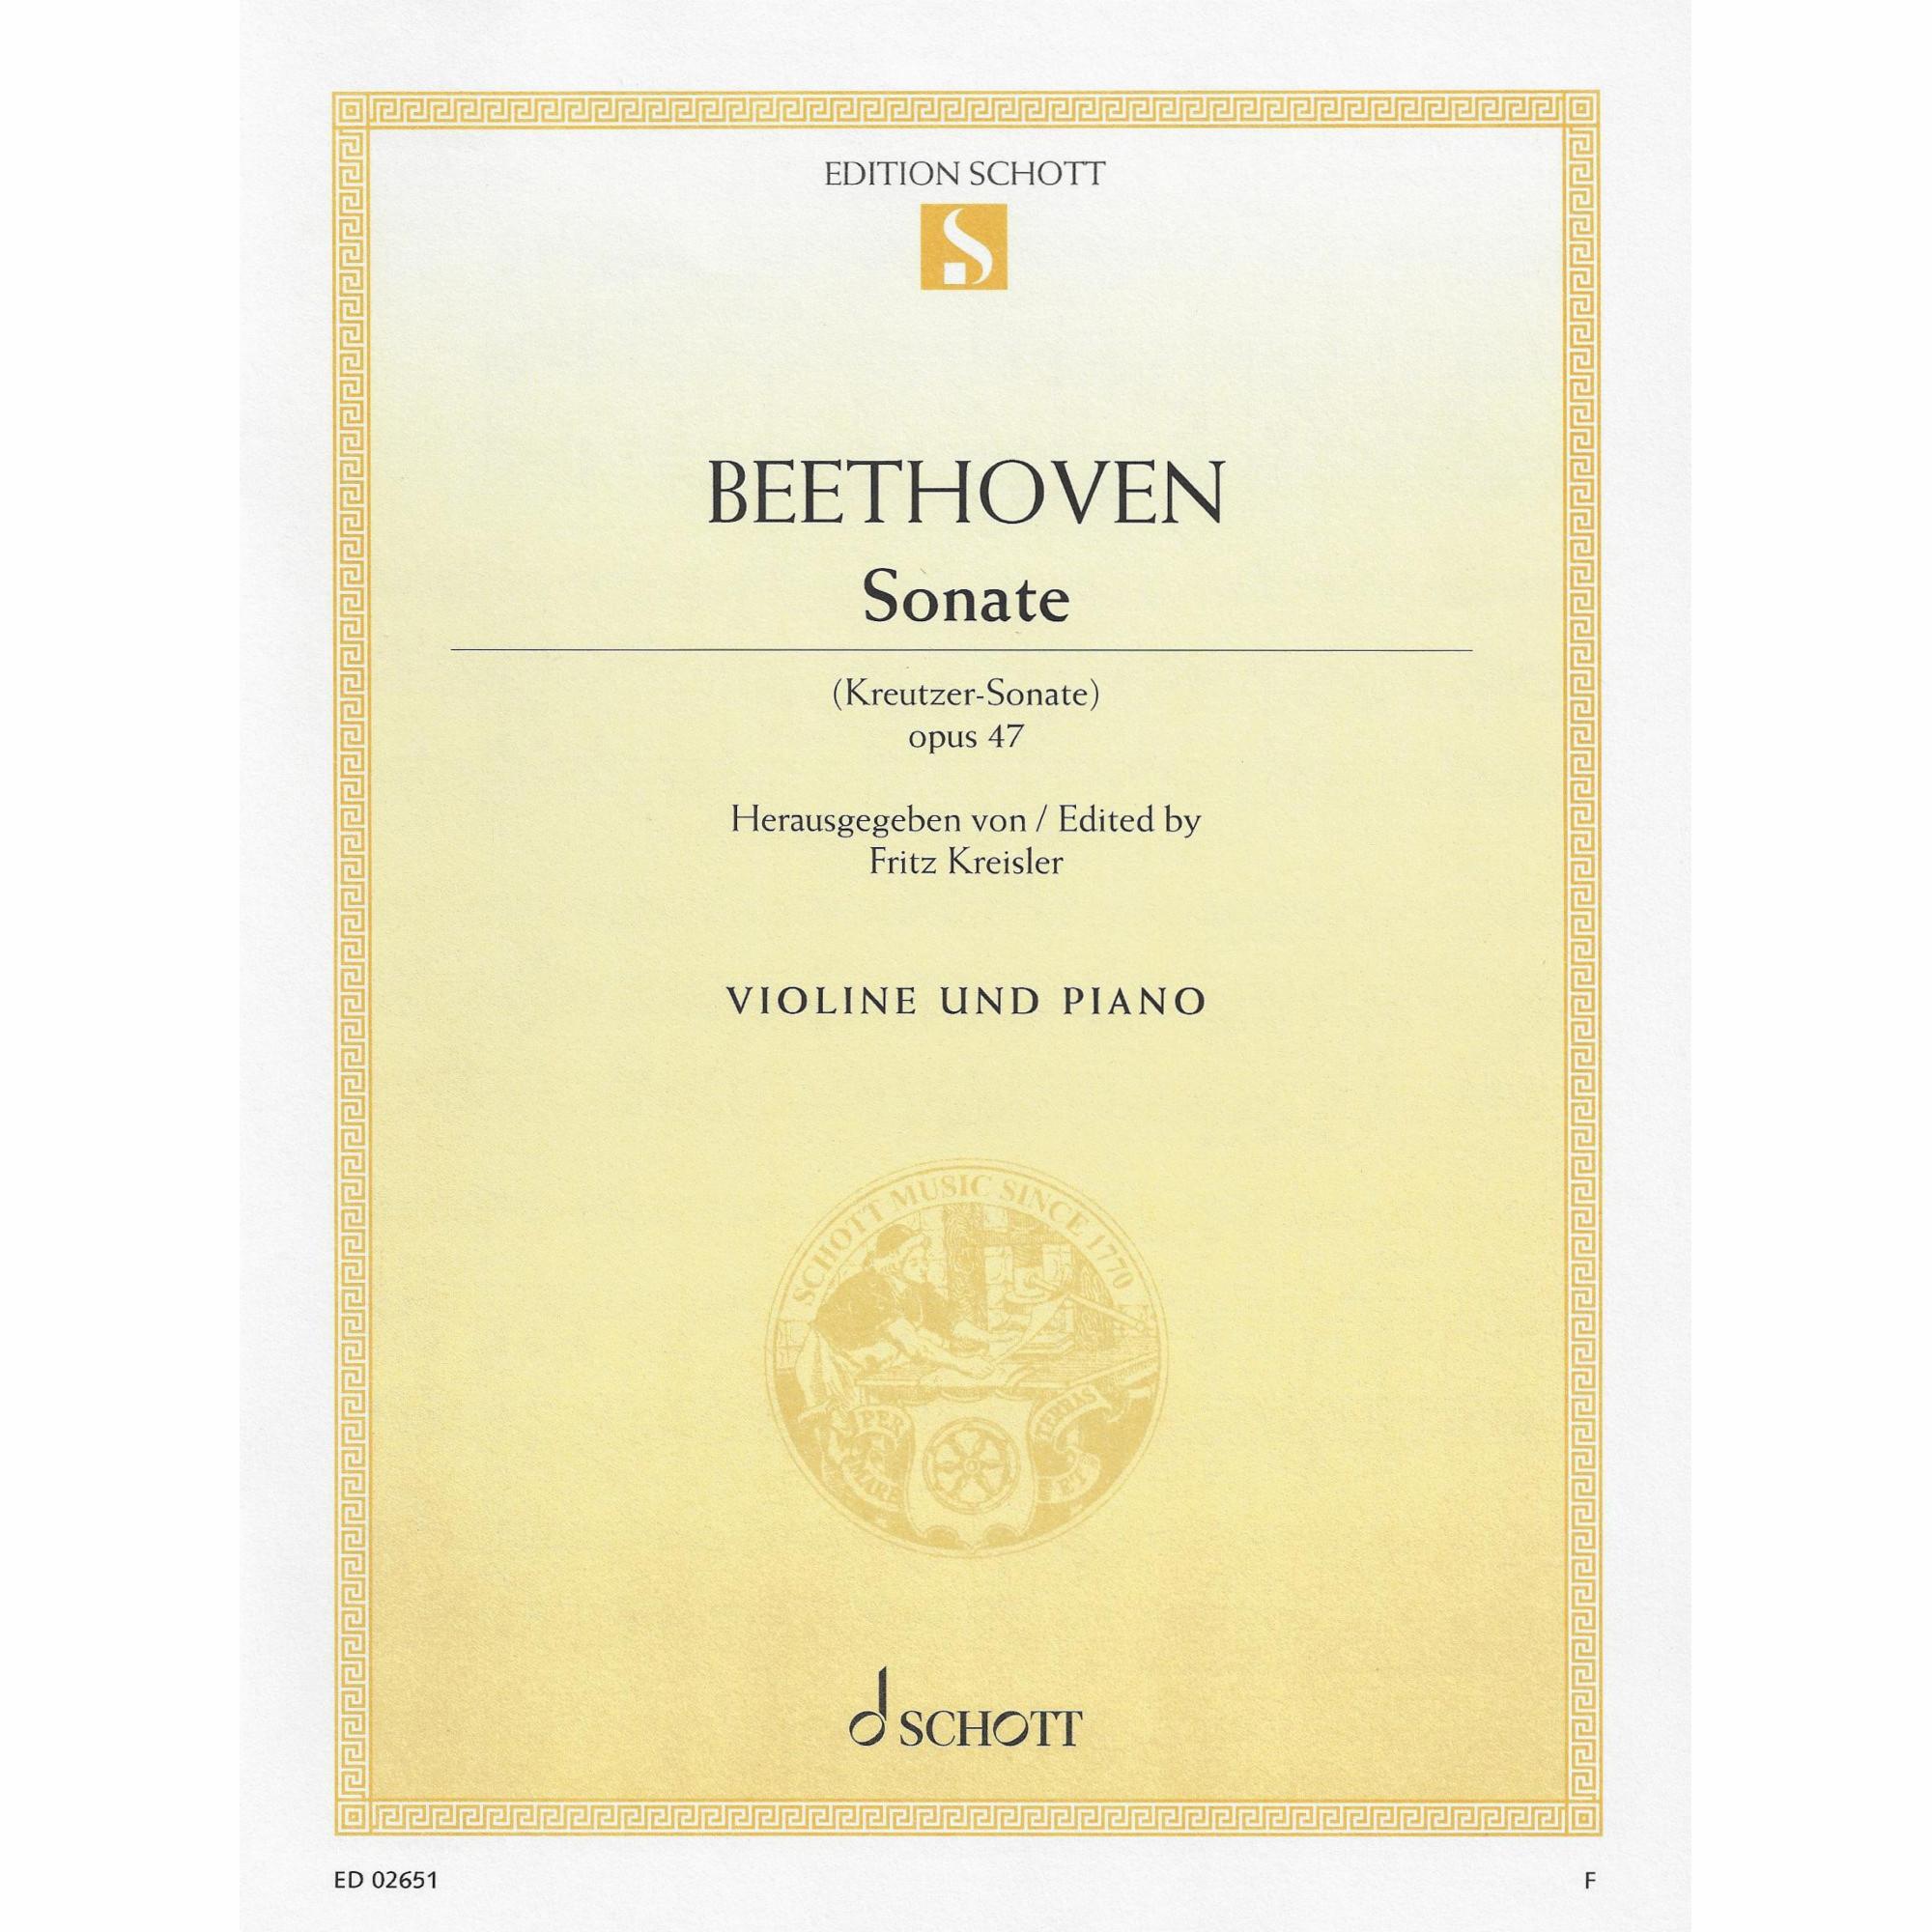 Beethoven -- Sonata, Op. 47 (Kreutzer Sonata) for Violin and Piano